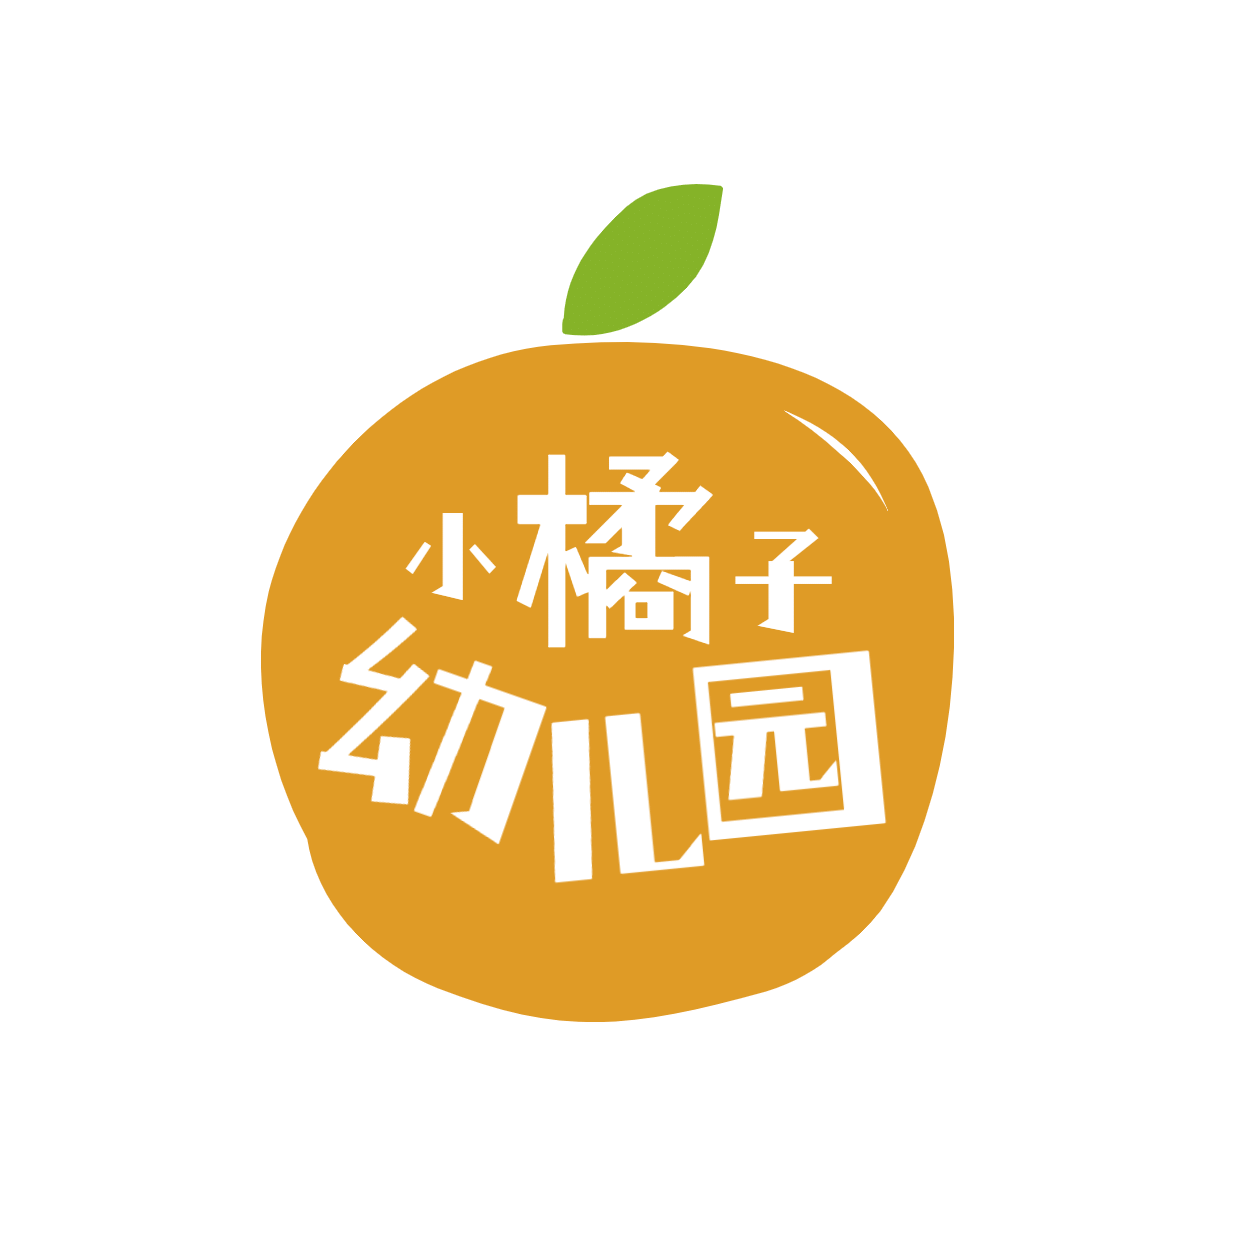 教育机构幼儿园店标头像logo预览效果